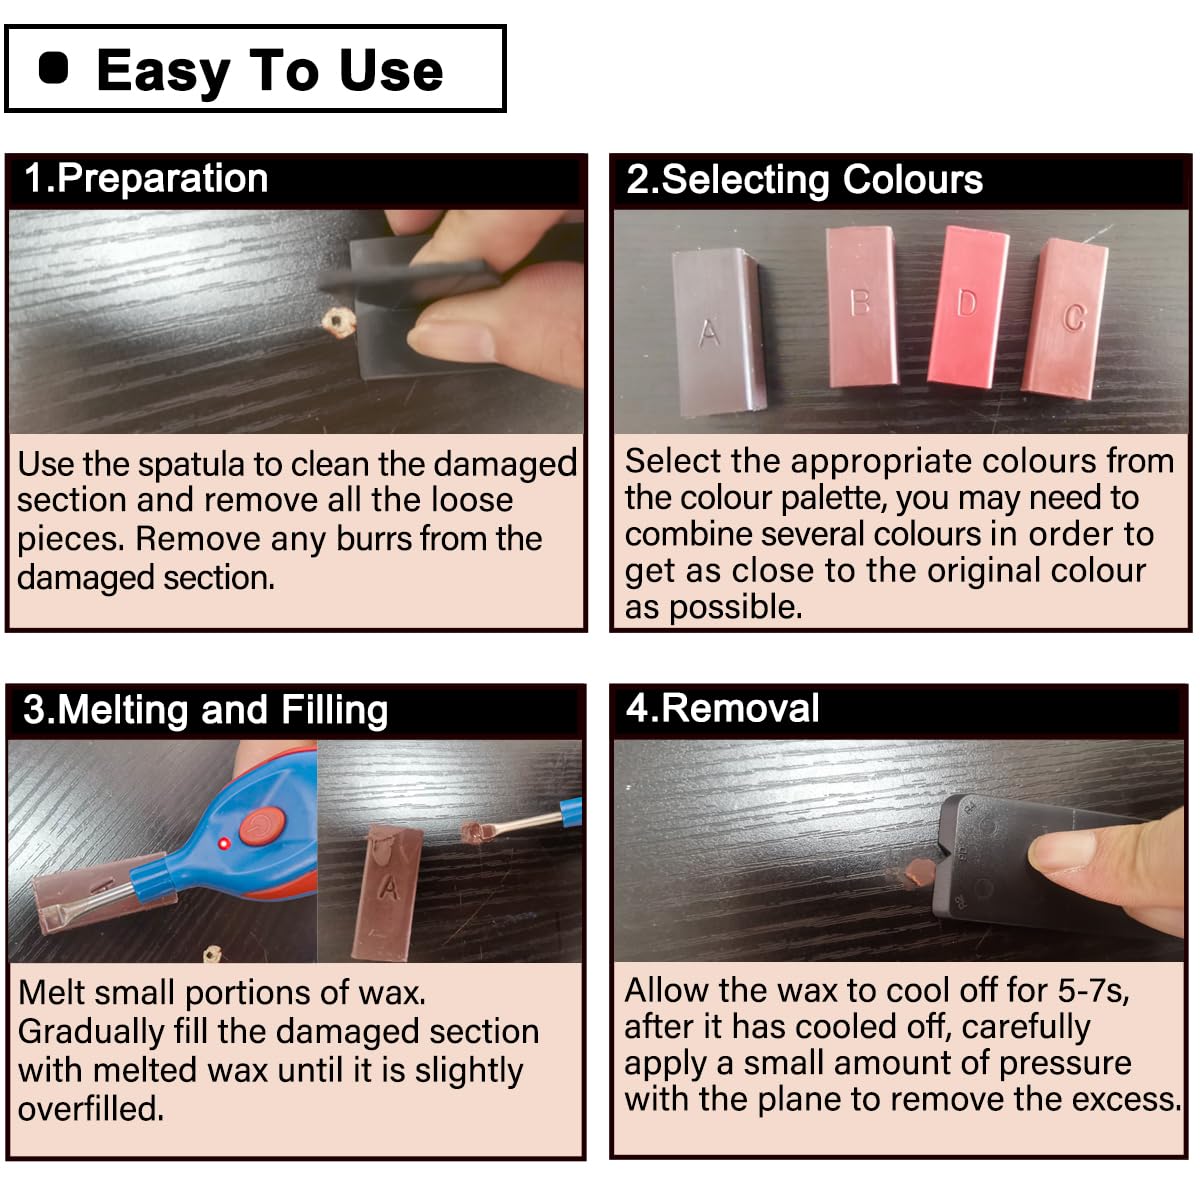 Wood Floor Repair Kit- Laminate Vinyl Hardwood Floor Repair Kit with Heat Pen Wax Filler Kit Cover Scratches, Stains, Cracks, Holes for Lvp Floor&